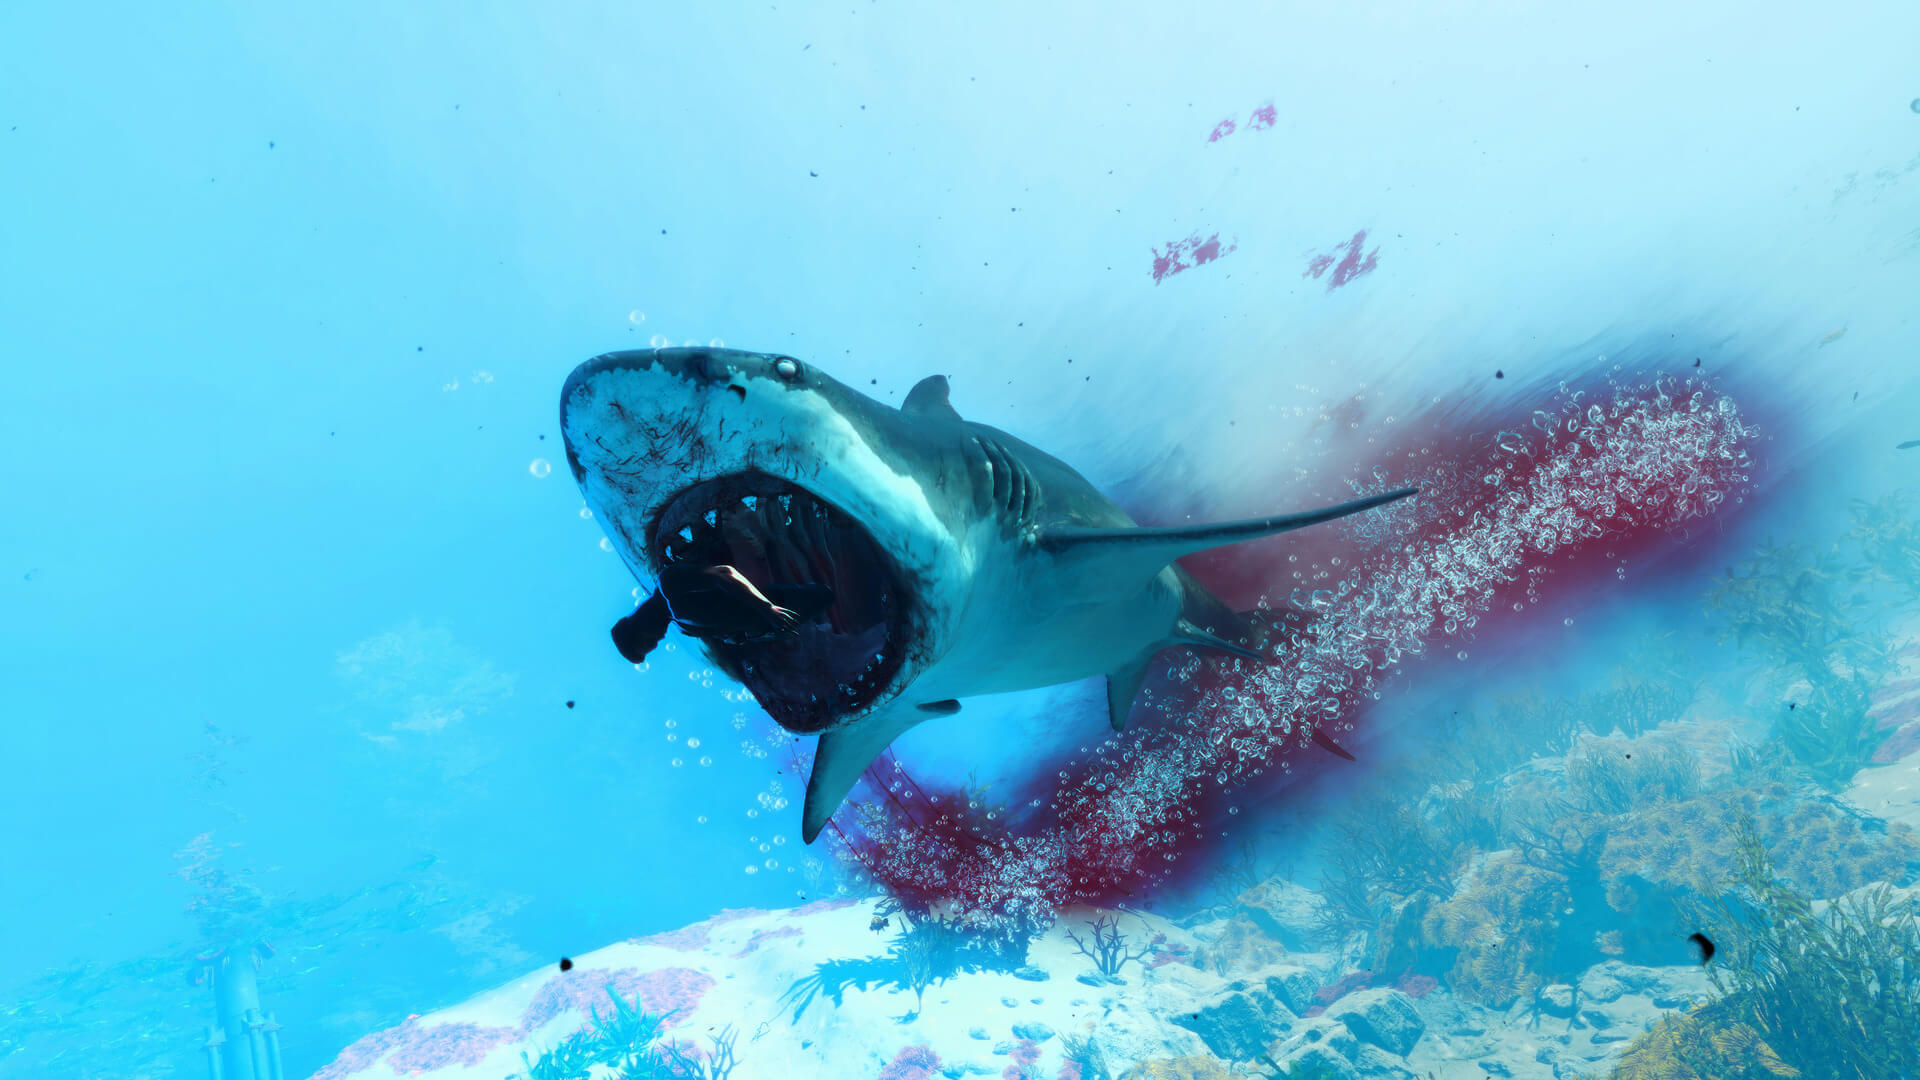 模拟游戏《食人鲨》全新截图放出 疯狂鲨鱼血腥杀戮